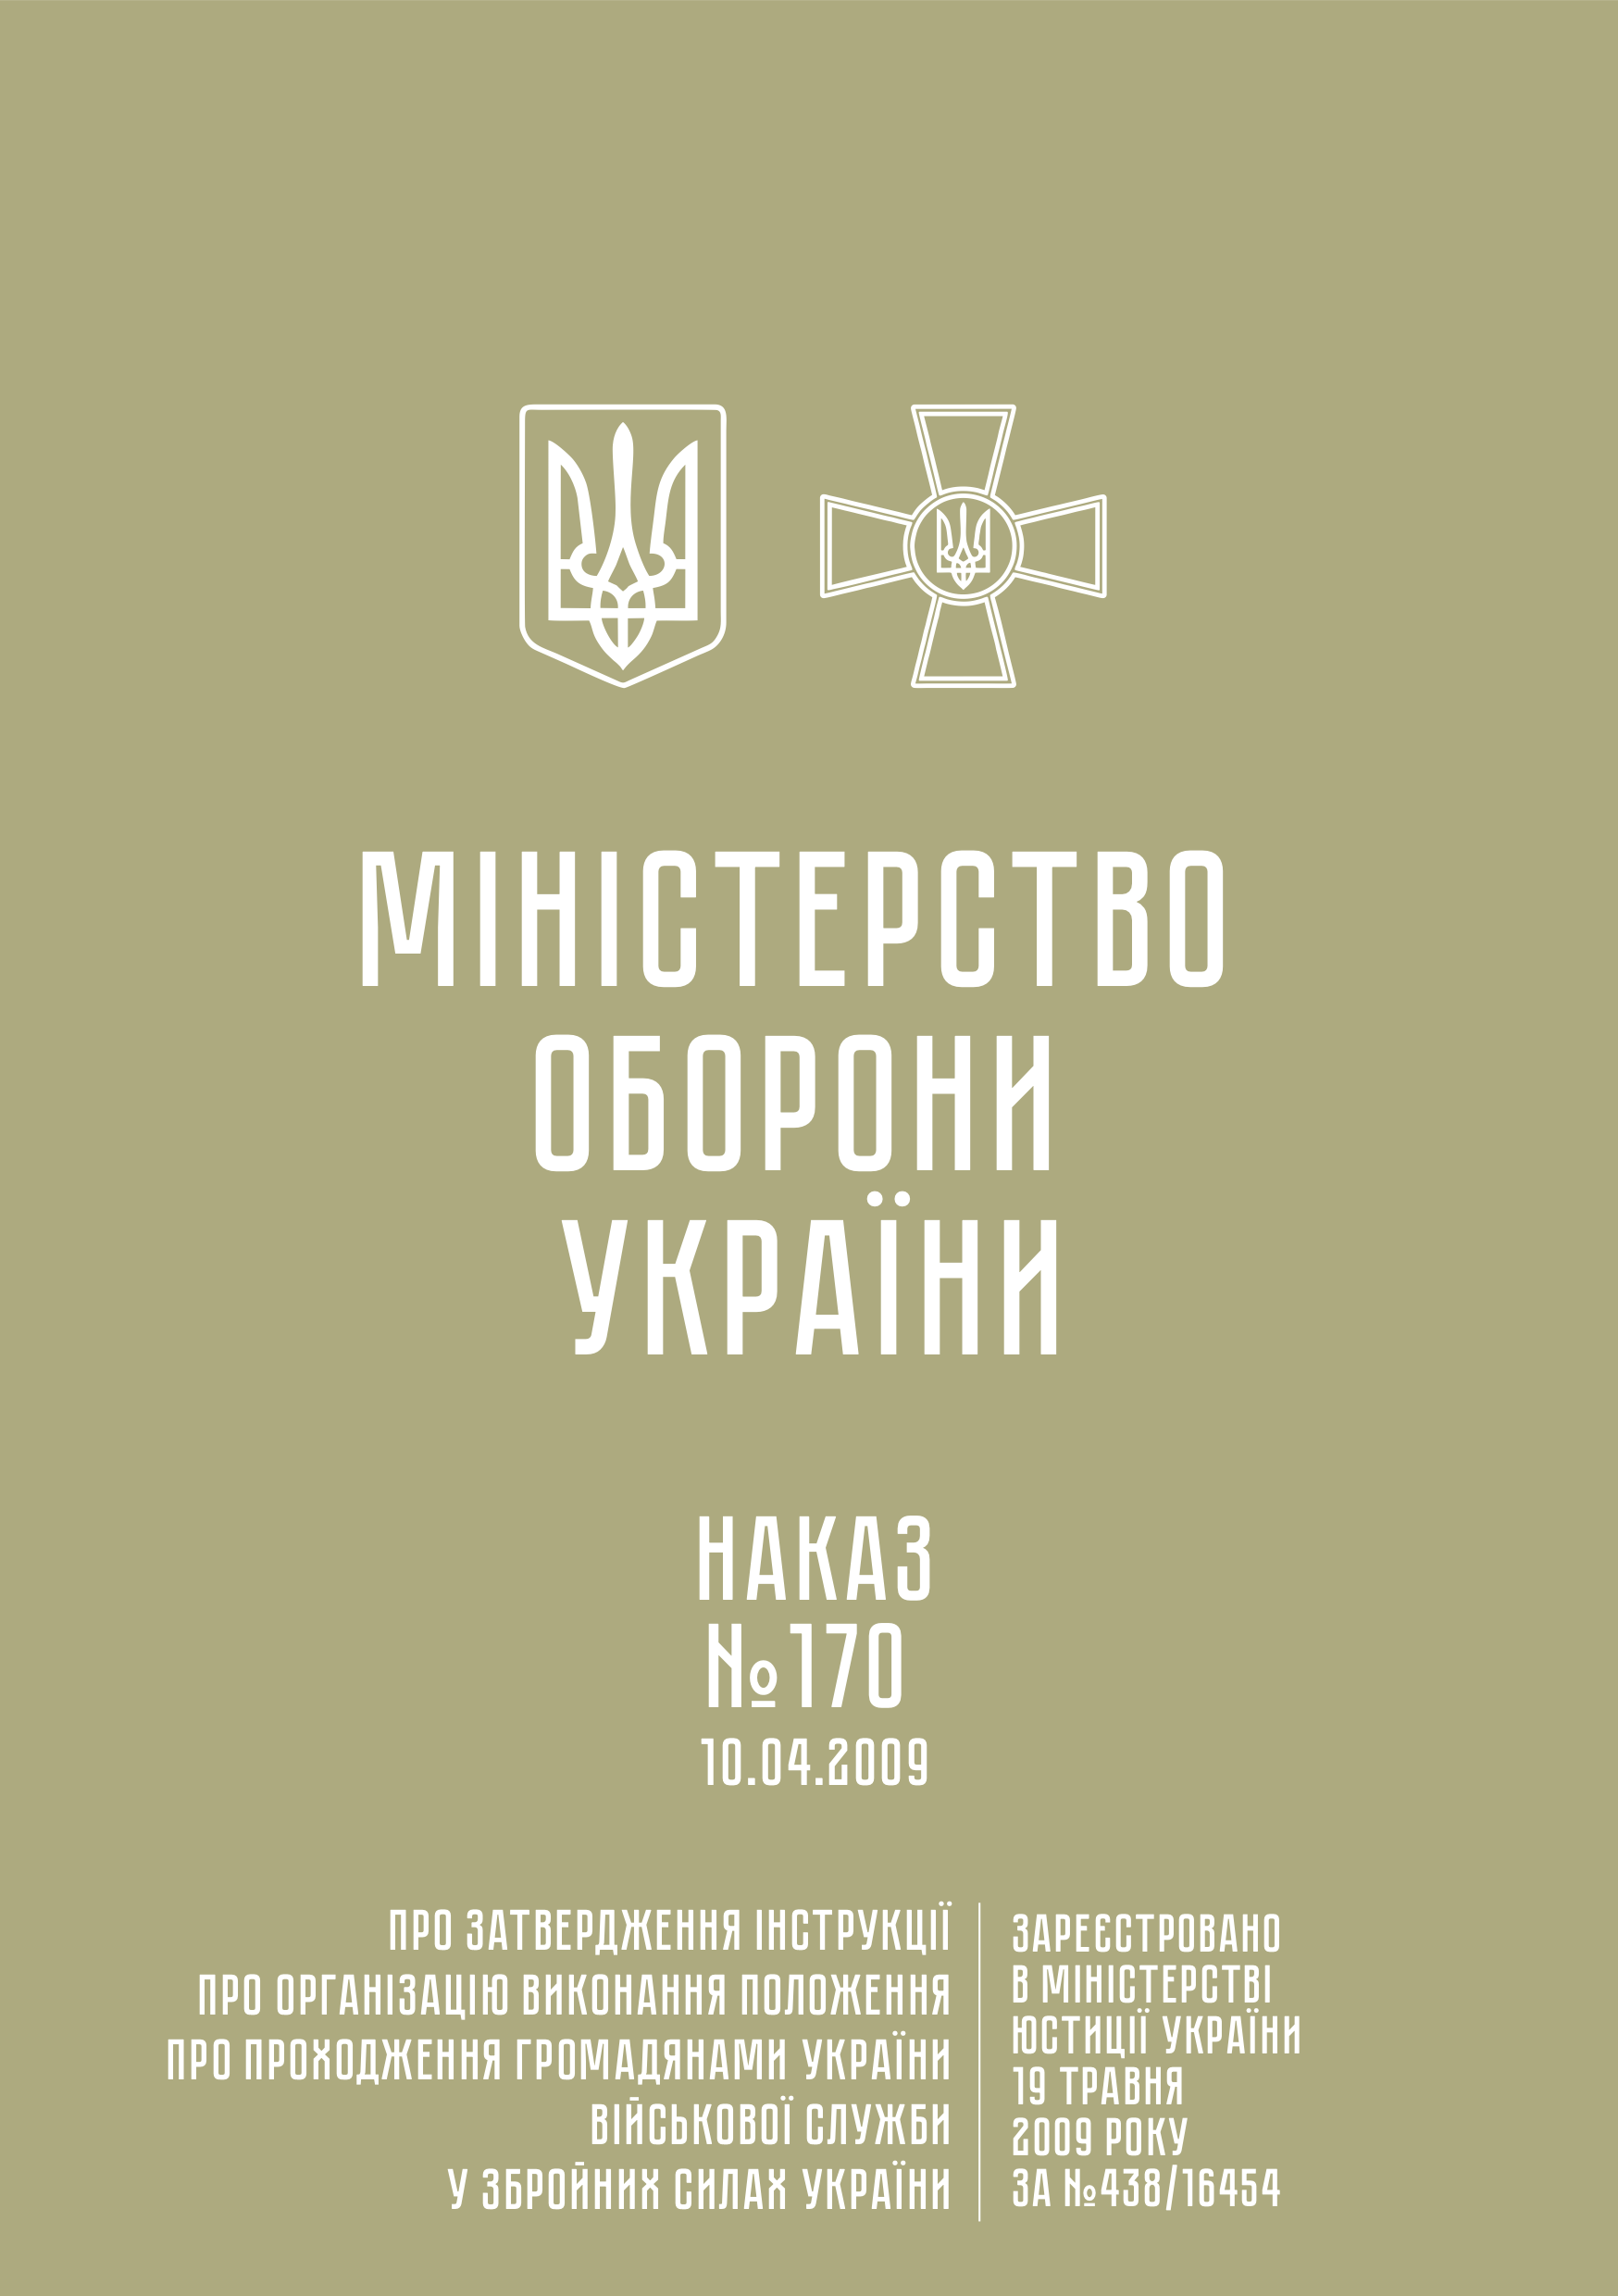 Наказ МОУ № 170 — Інструкція про організацію виконання Положення про проходження громадянами України військової служби у ЗСУ